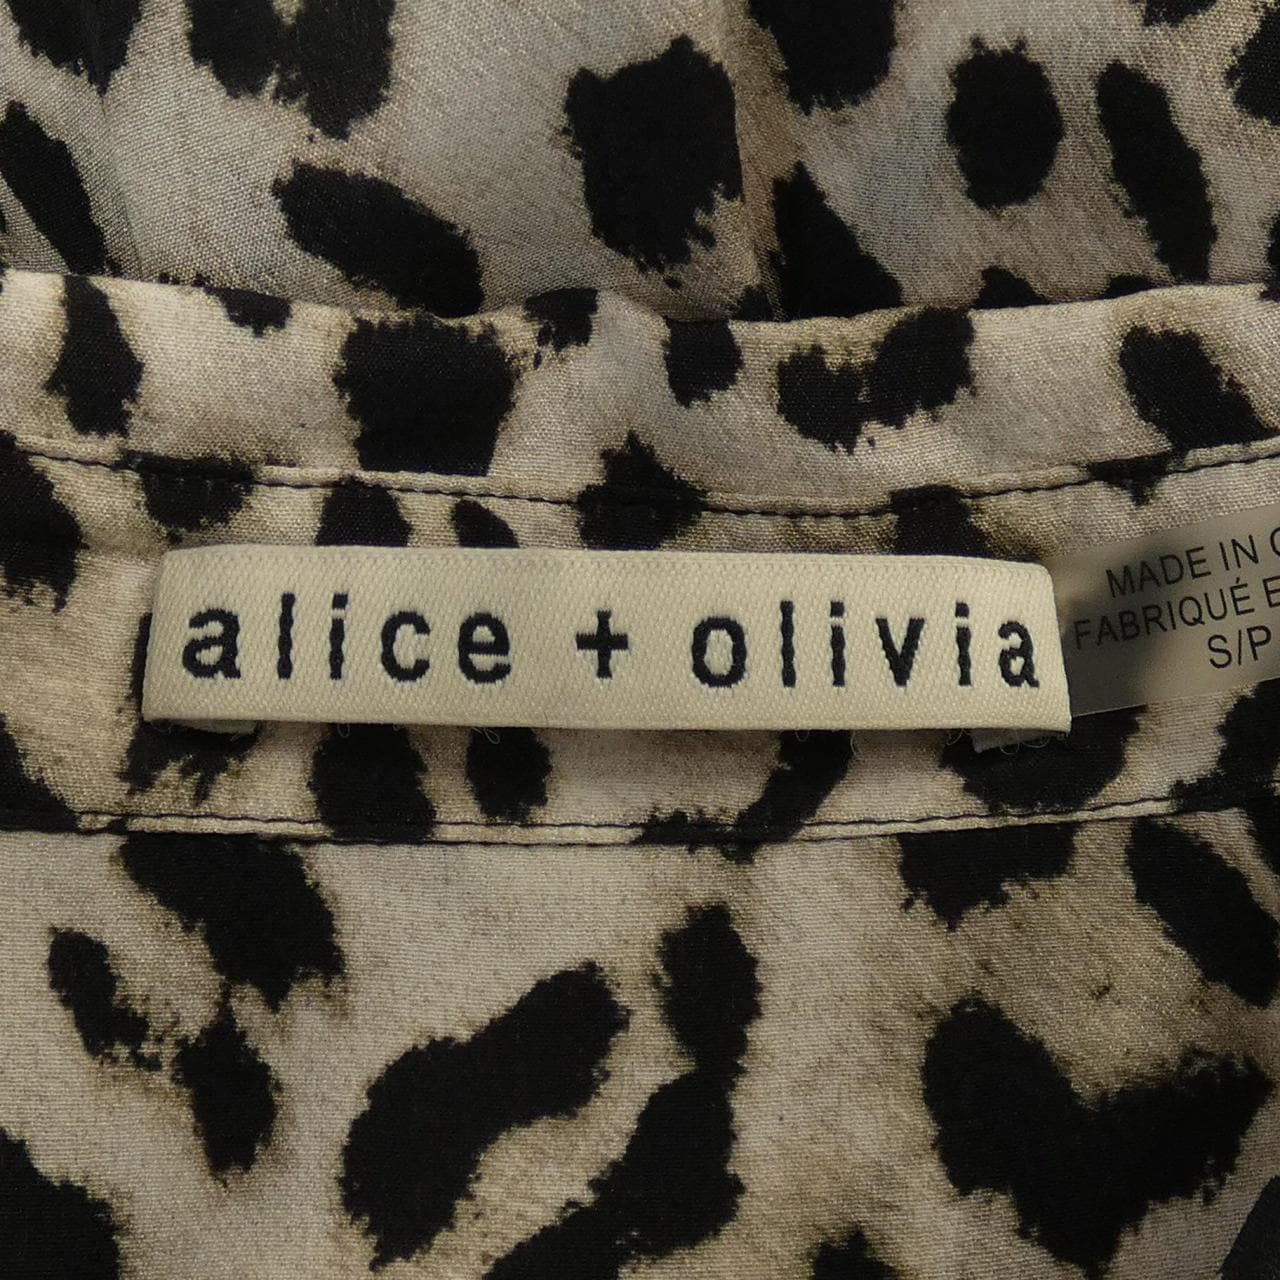 爱丽丝和奥利维亚ALICE+OLIVIA衬衫